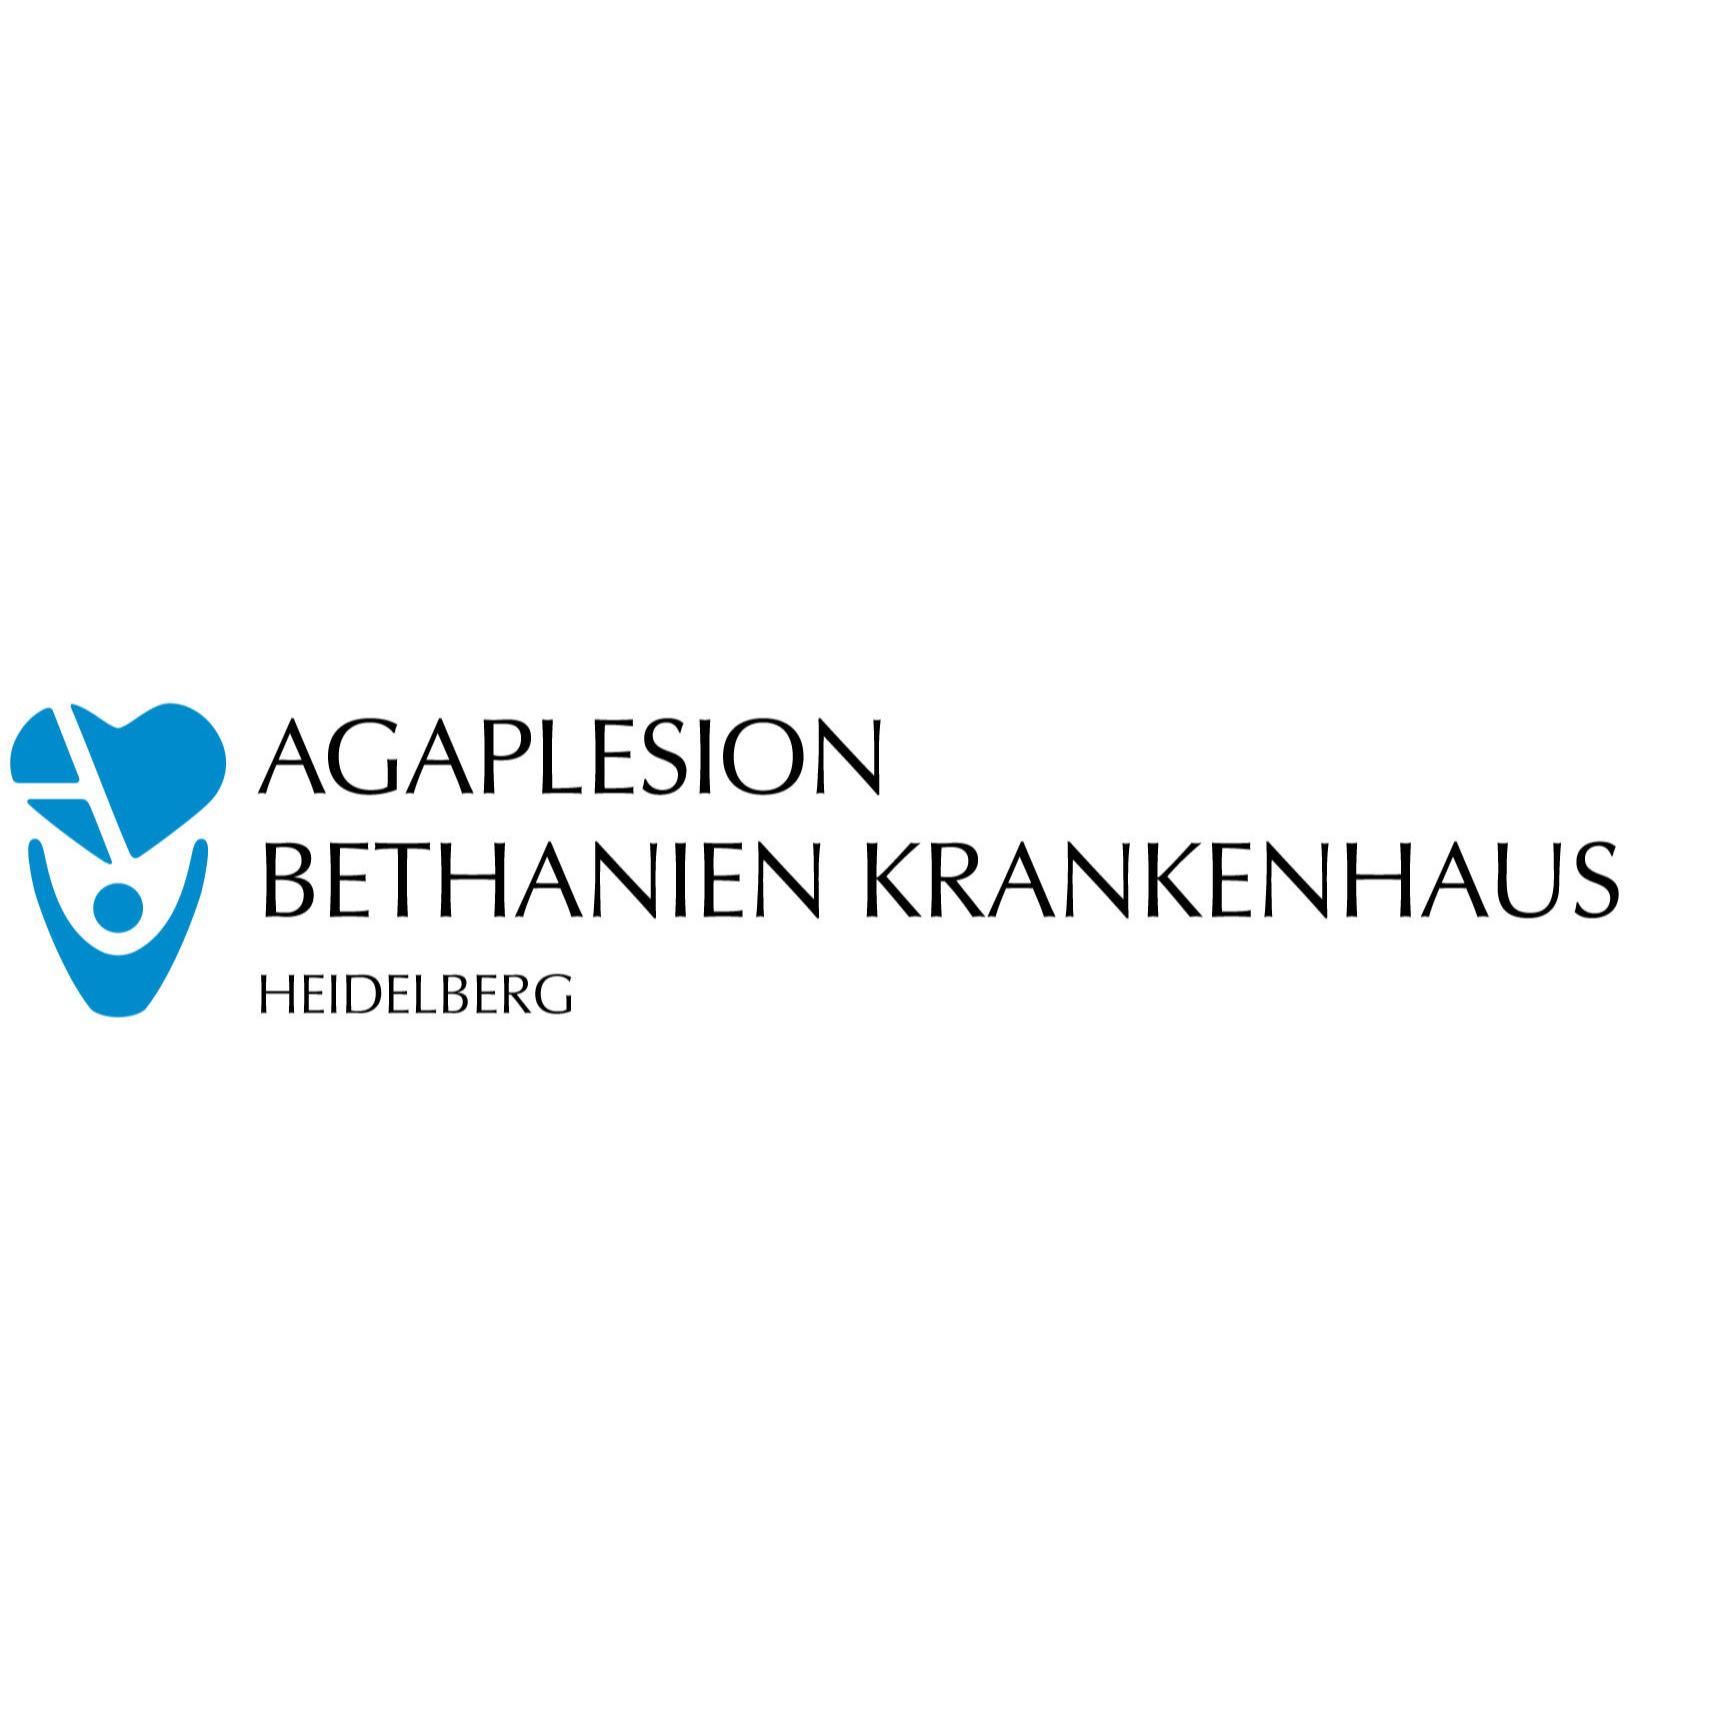 REGE e. V. (Rehabilitationssport in der Geriatrie) am AGAPLESION BETHANIEN KRANKENHAUS HEIDELBERG in Heidelberg - Logo